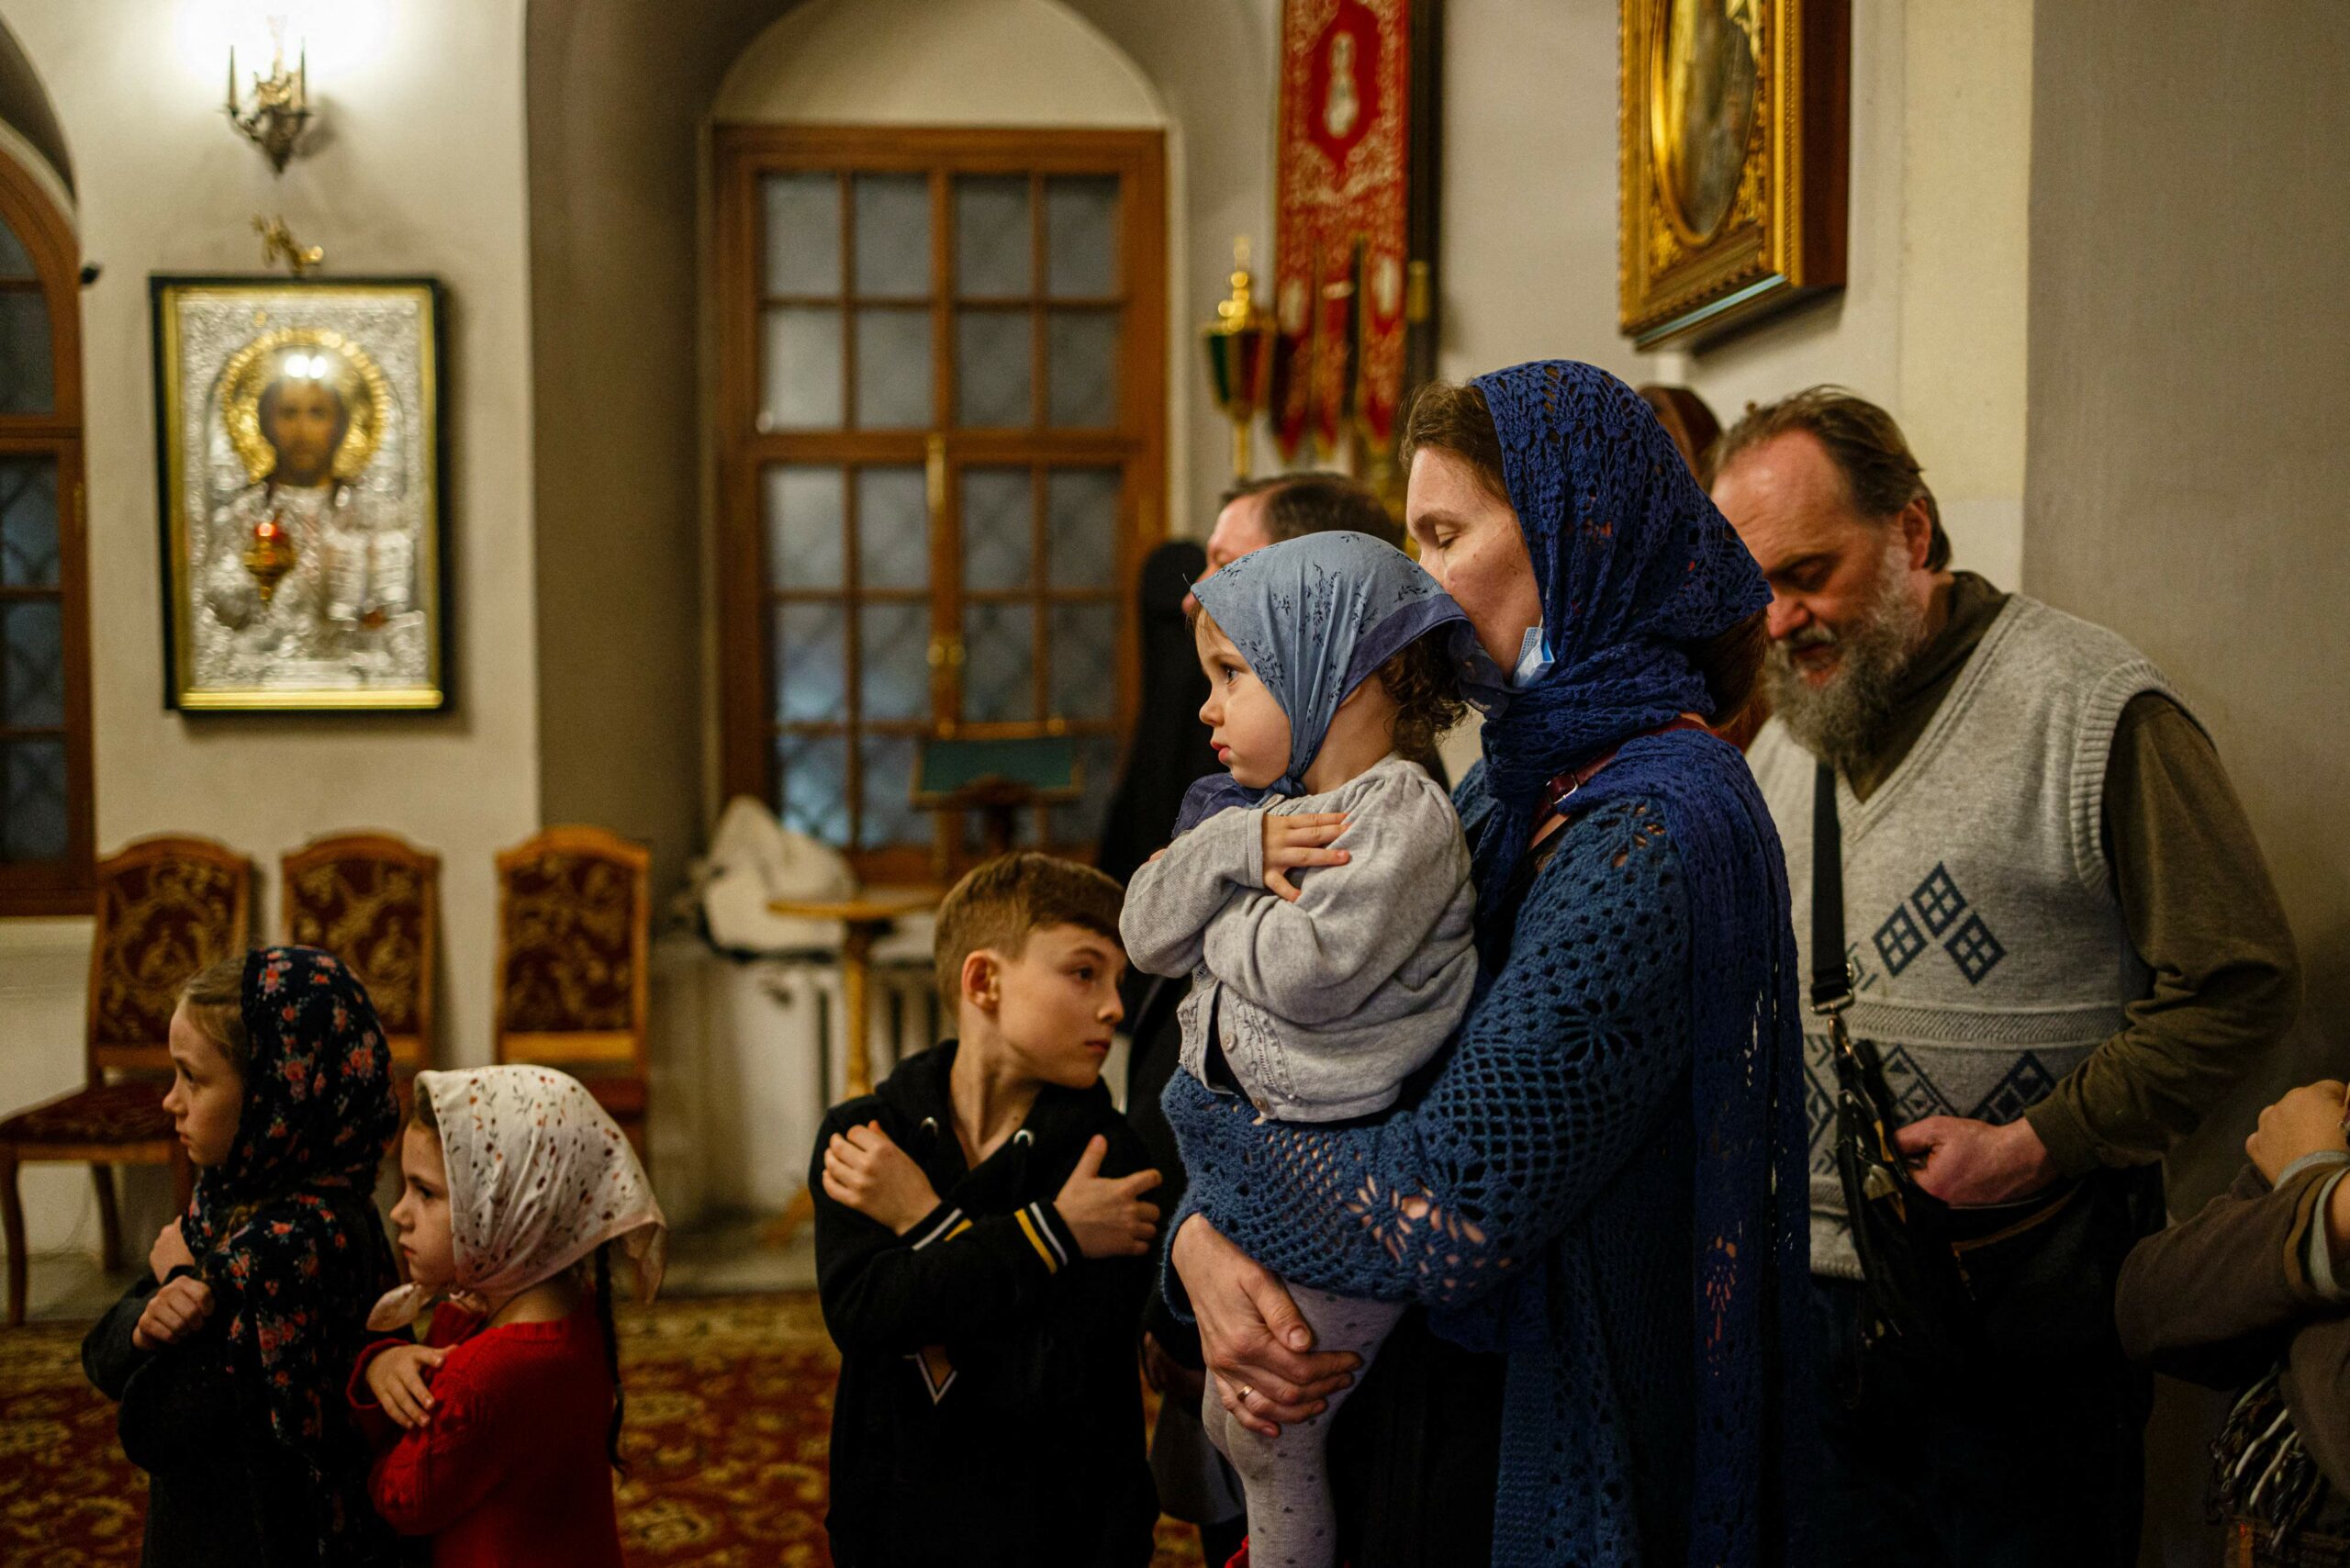 Верующие посещают рождественскую службу в Высоко-Петровском монастыре в Москве. Фото DIMITAR DILKOFF / TASS / Scanpix / Leta